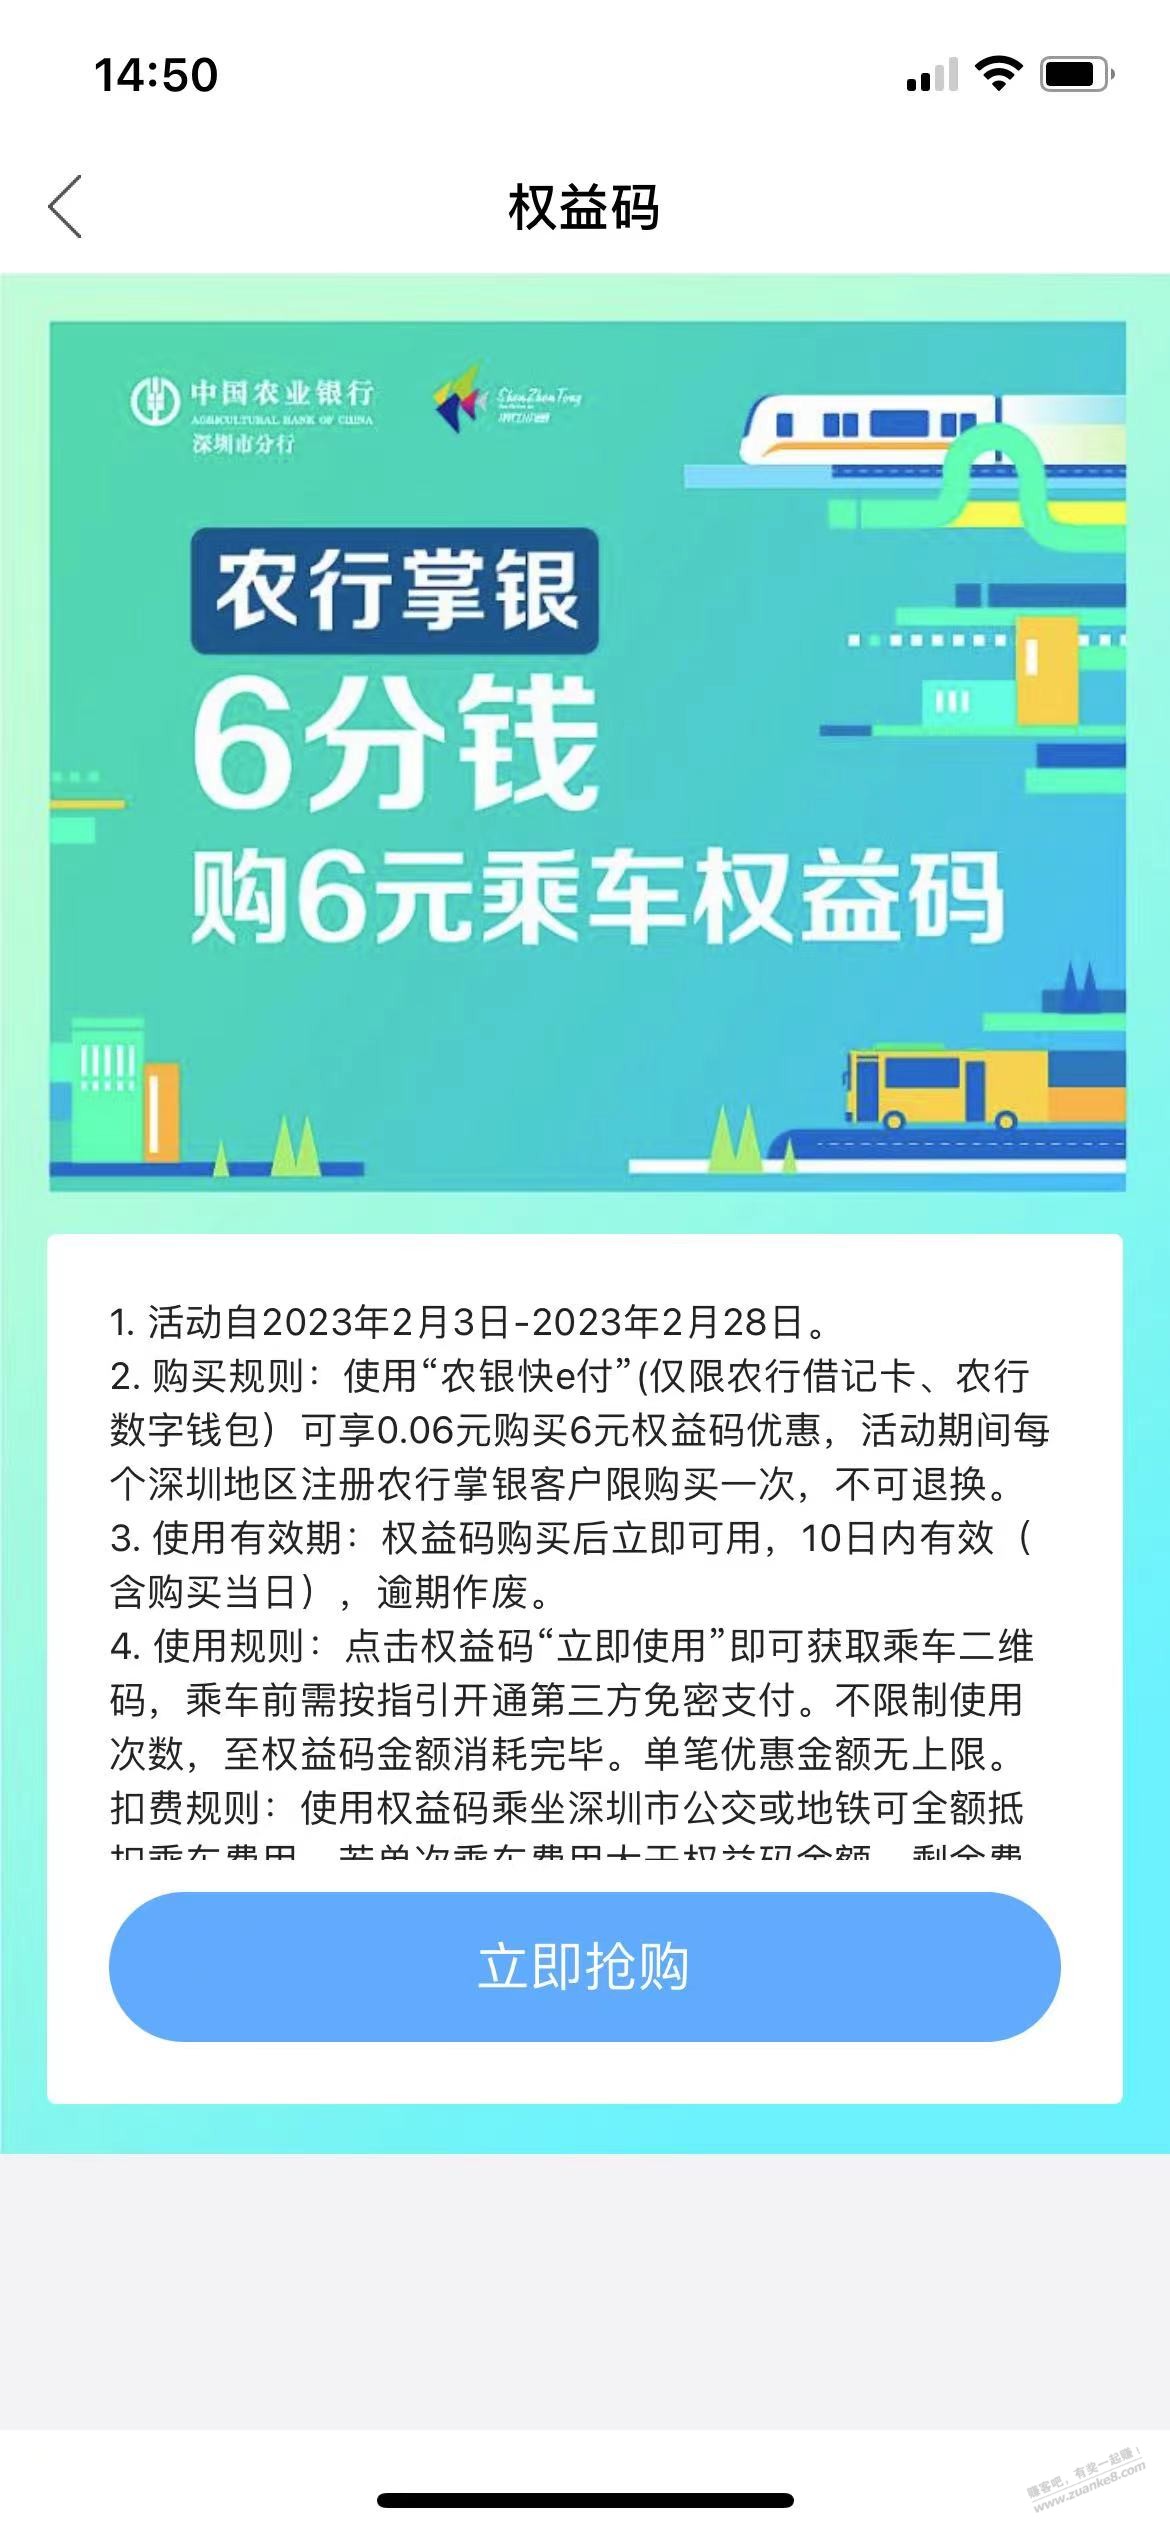 限制深圳农行6分购10元乘车权益码-惠小助(52huixz.com)